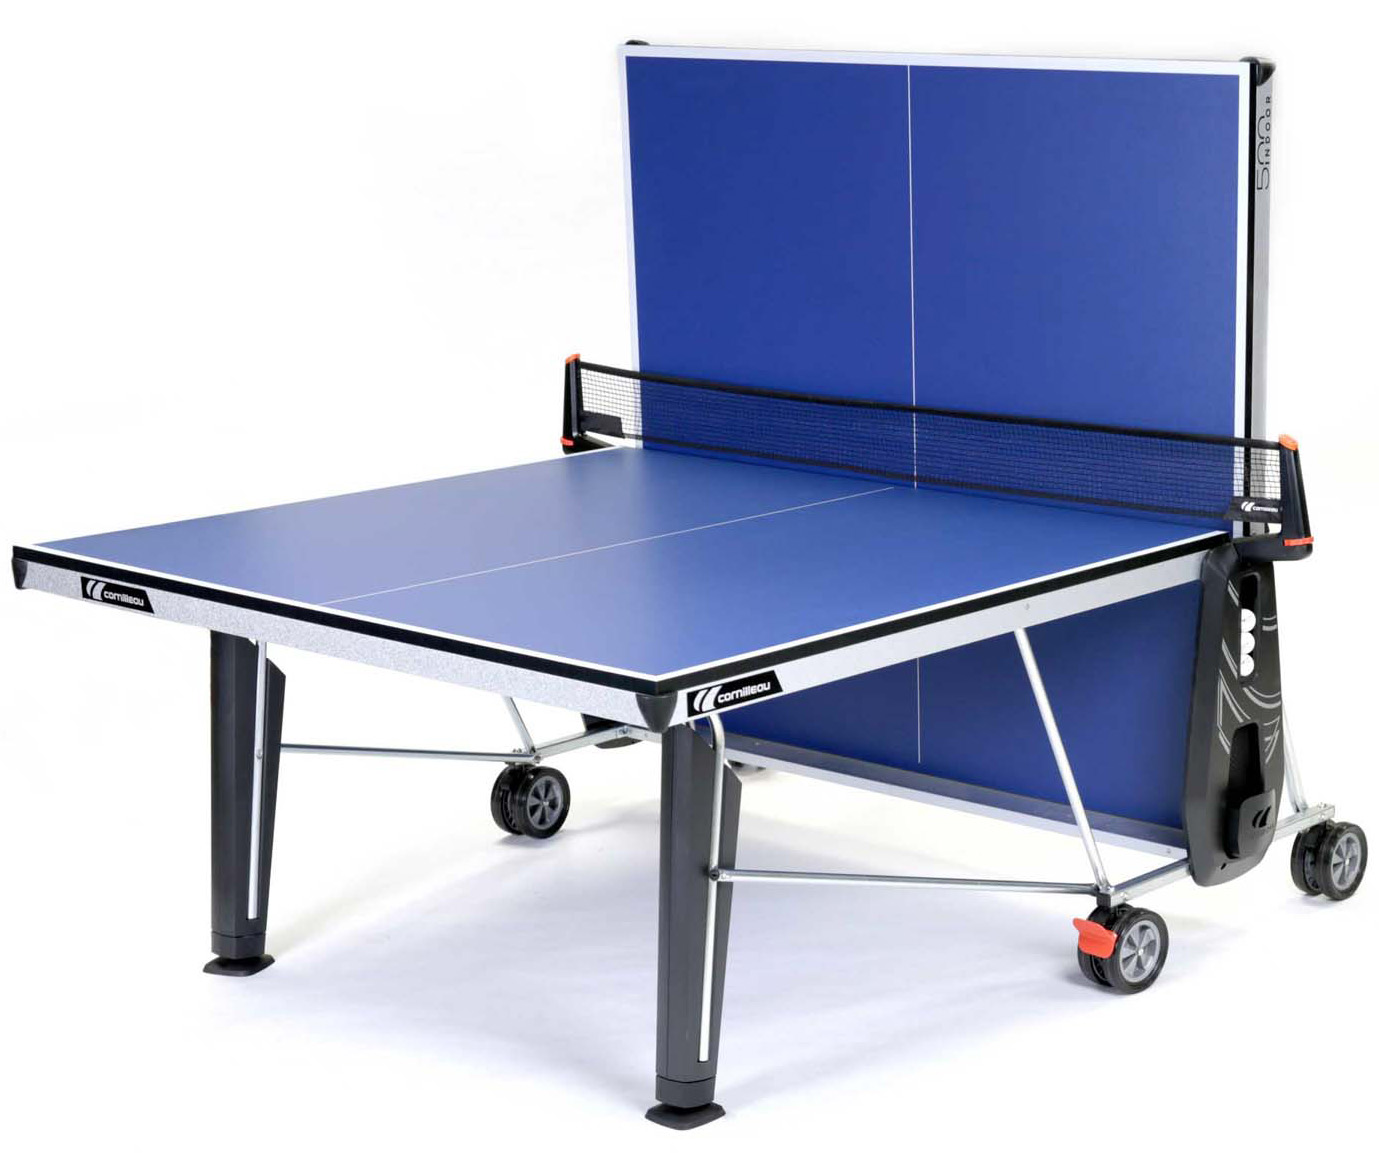 Comment bien choisir sa table de ping-pong ?